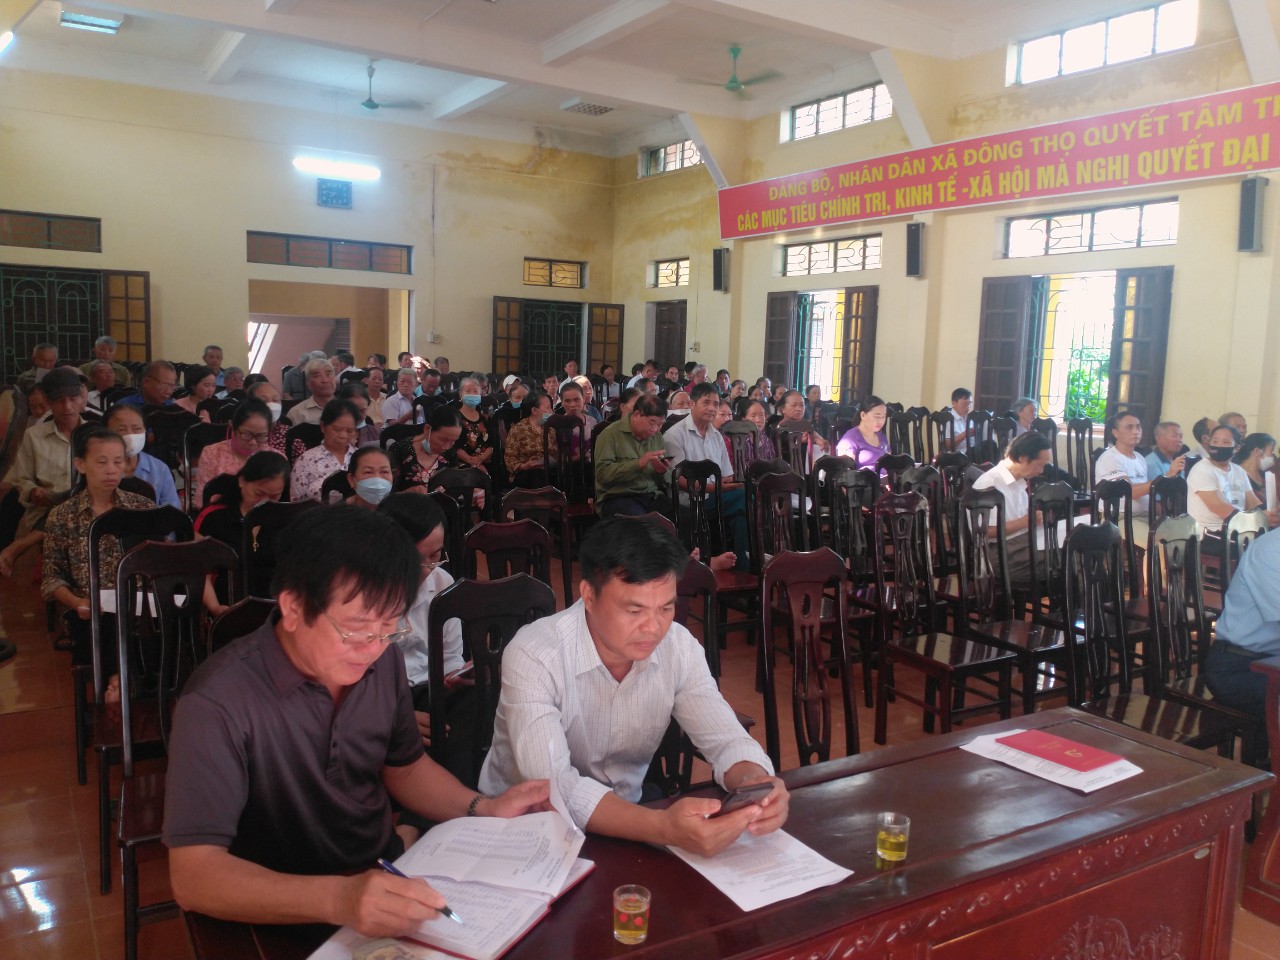 Trung tâm học tập cộng đồng xã Đông Thọ, Thành phố Thái Bình một điểm sáng về  xây dựng xã hội học tập ở cơ sở